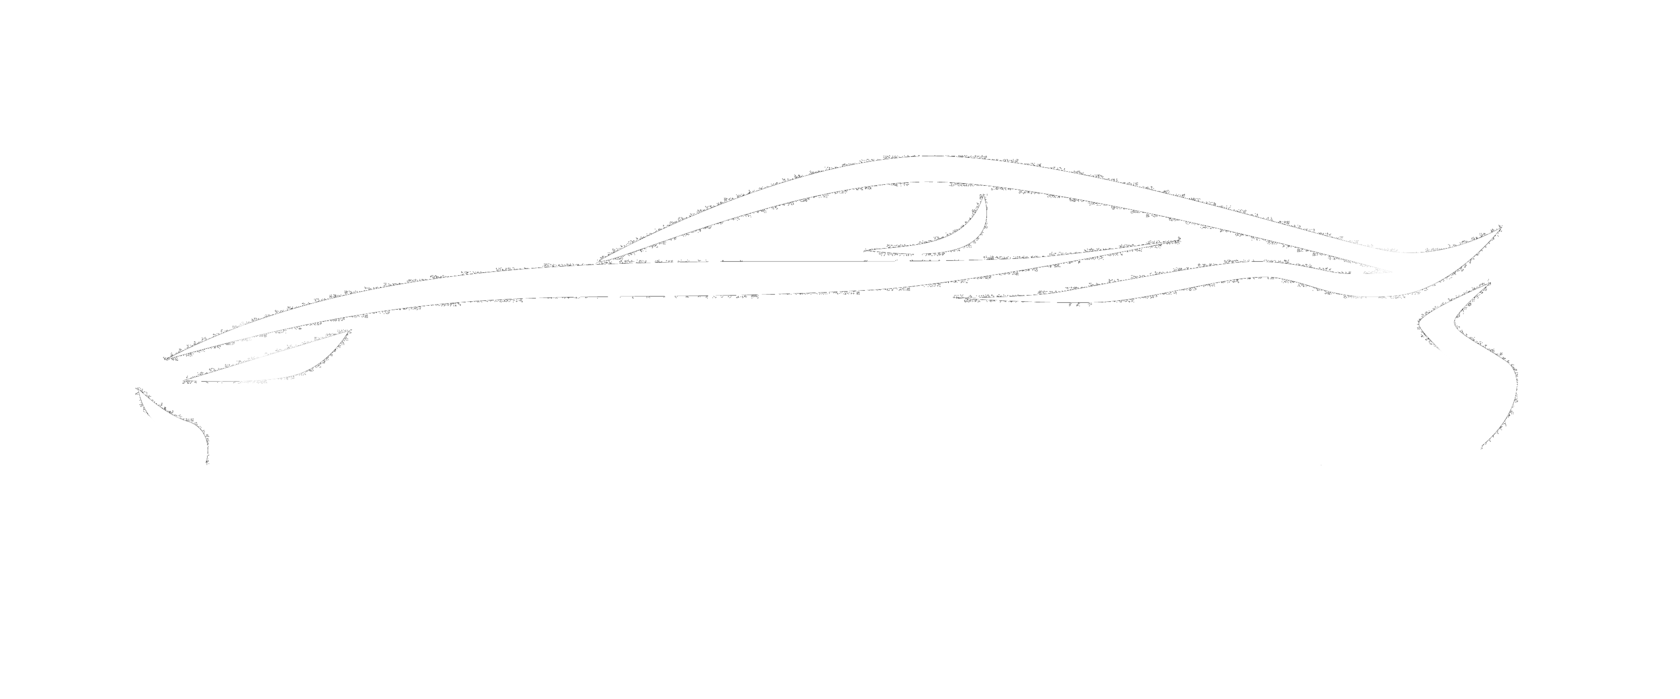 AVG-AUTO